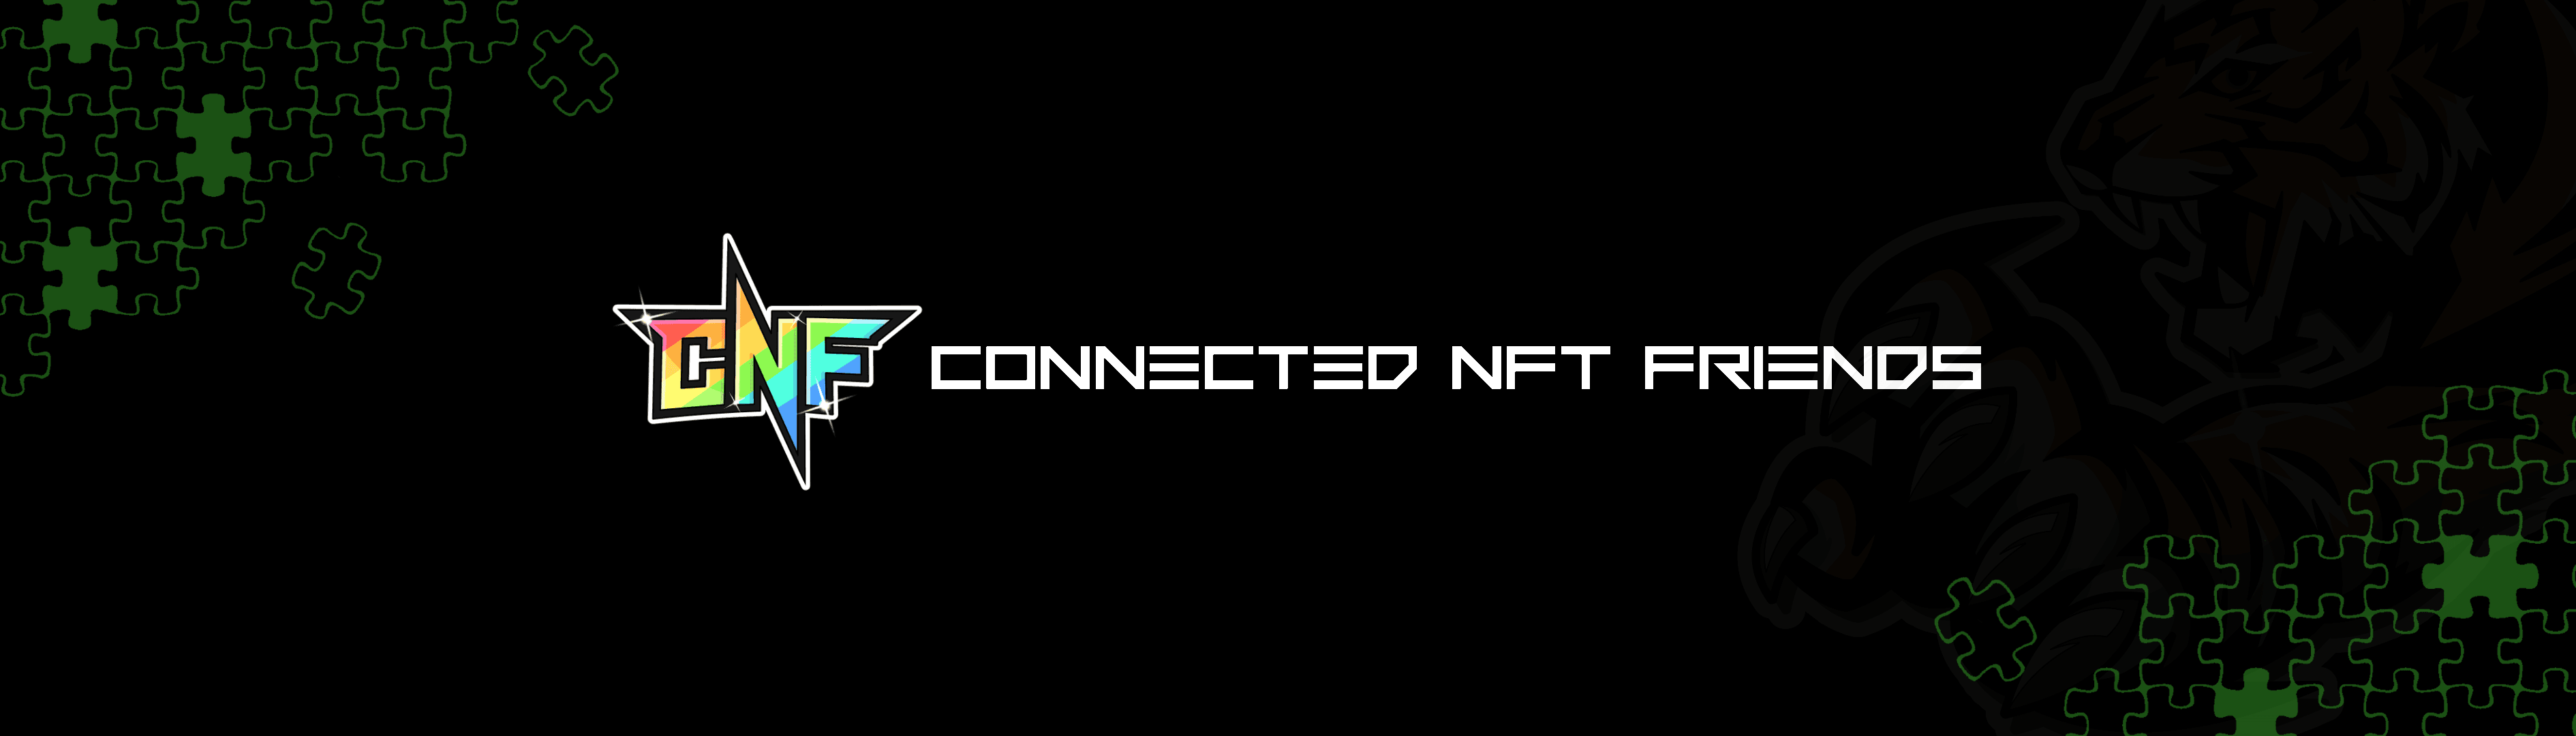 Connected_NFT_Friends 橫幅